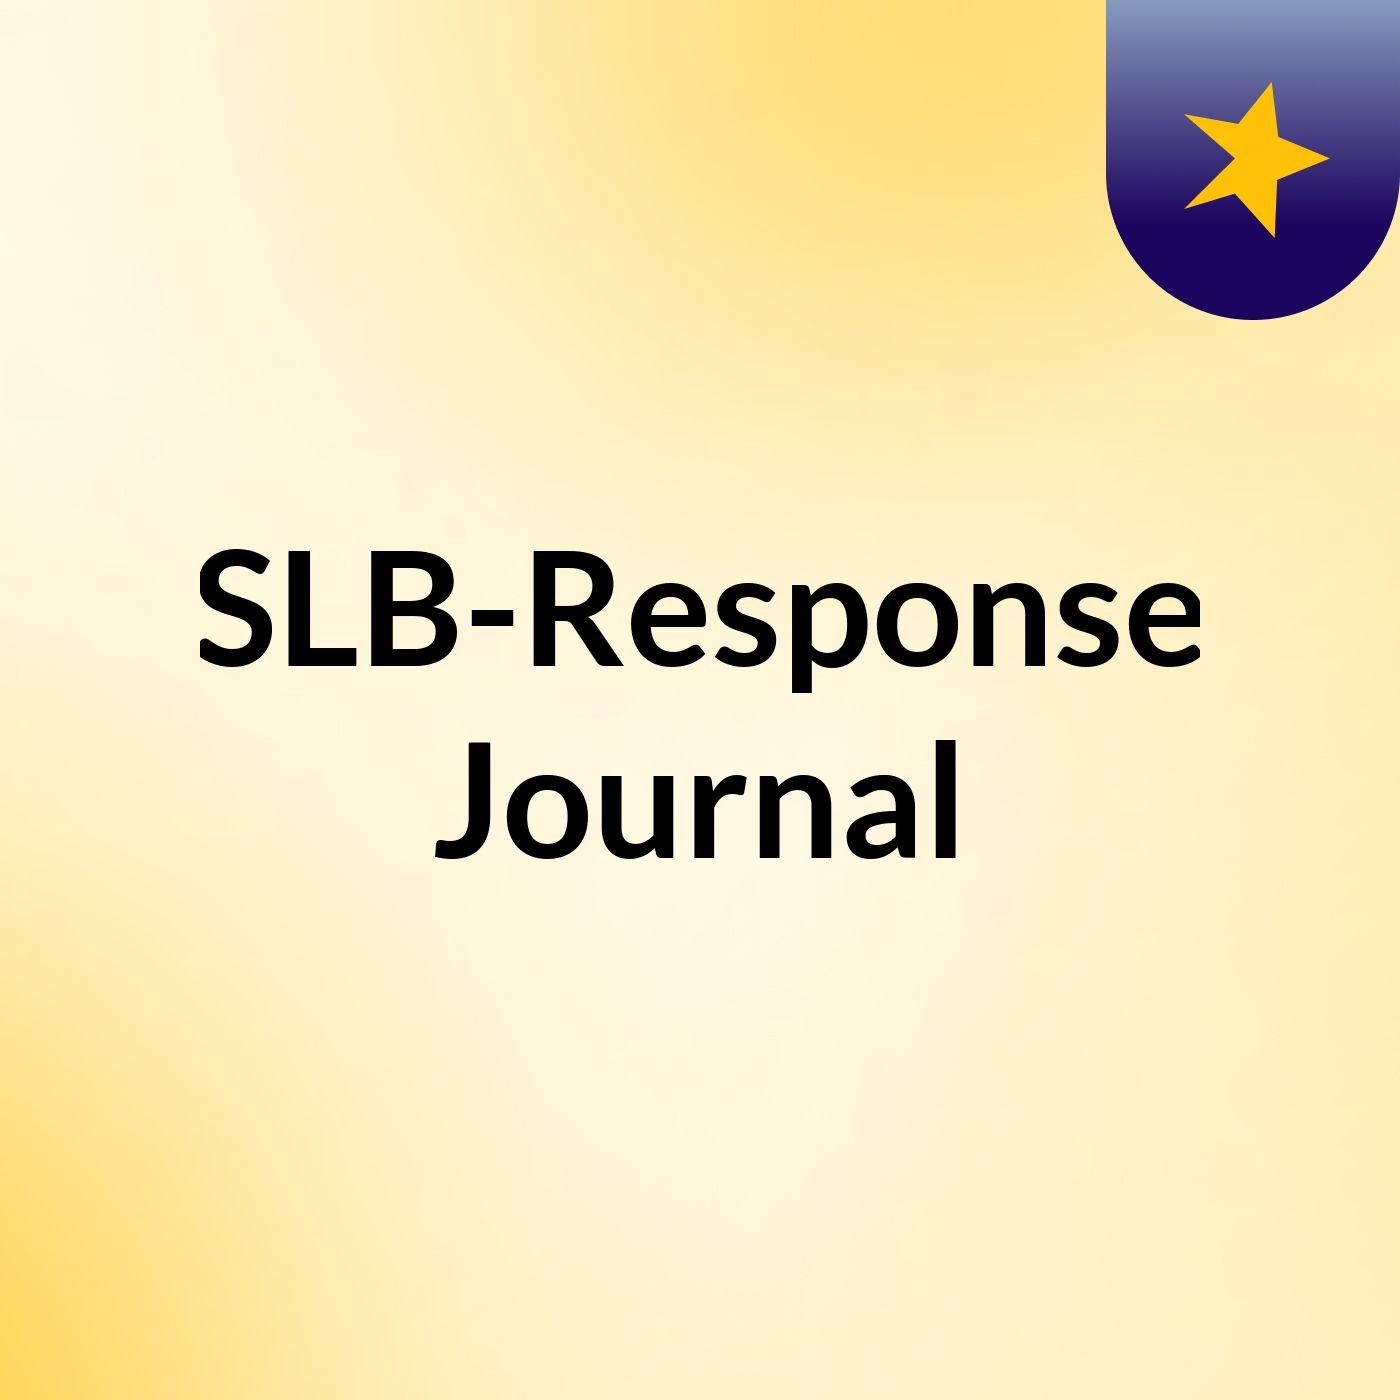 Episode 4 - SLB-Response Journal